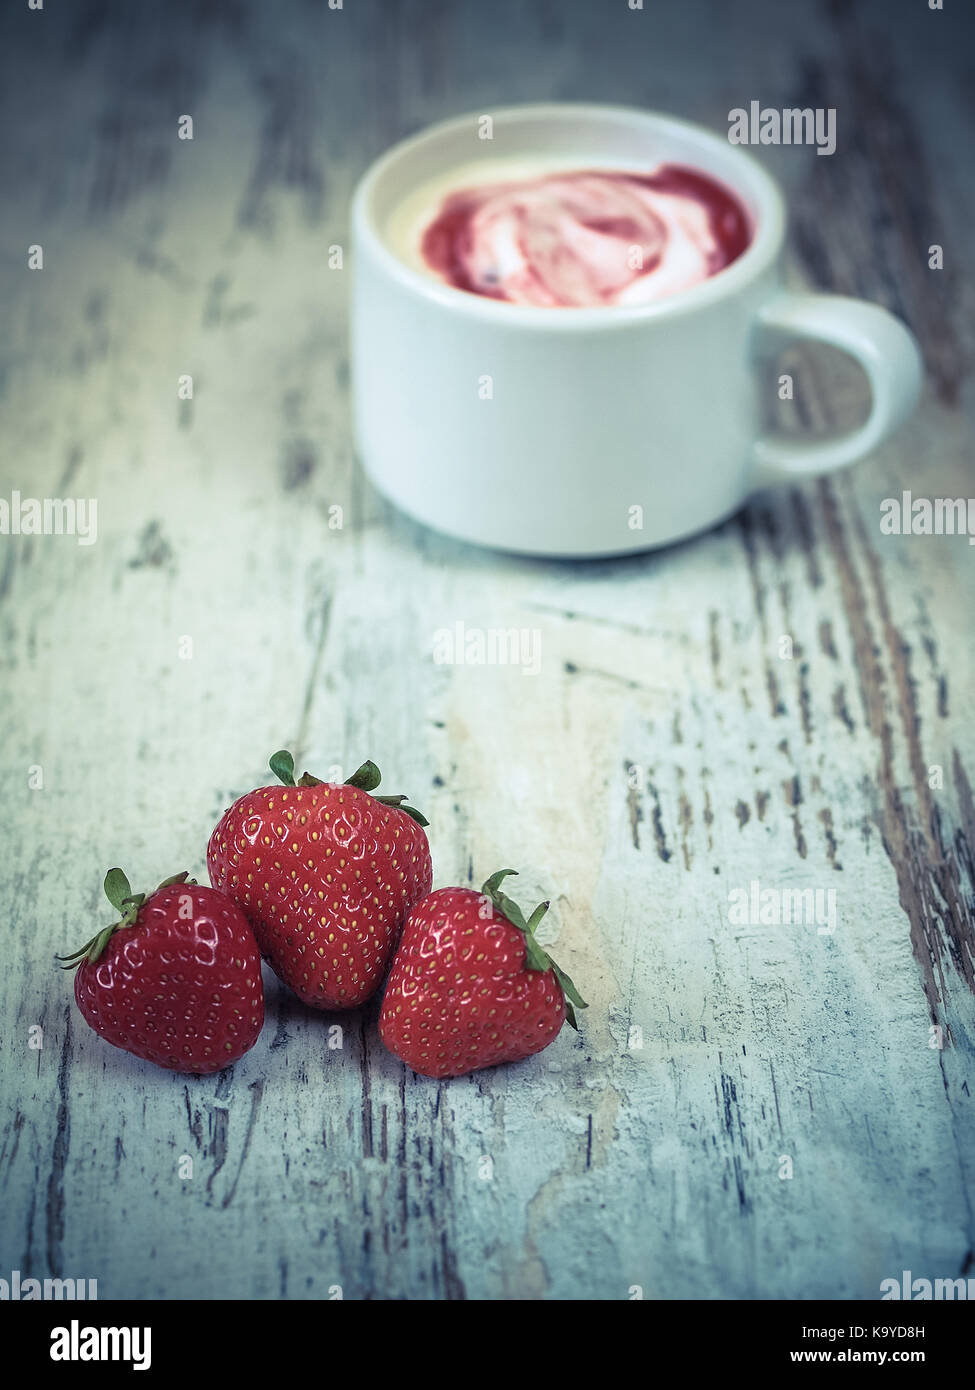 Strawberries yoghurt Stock Photo